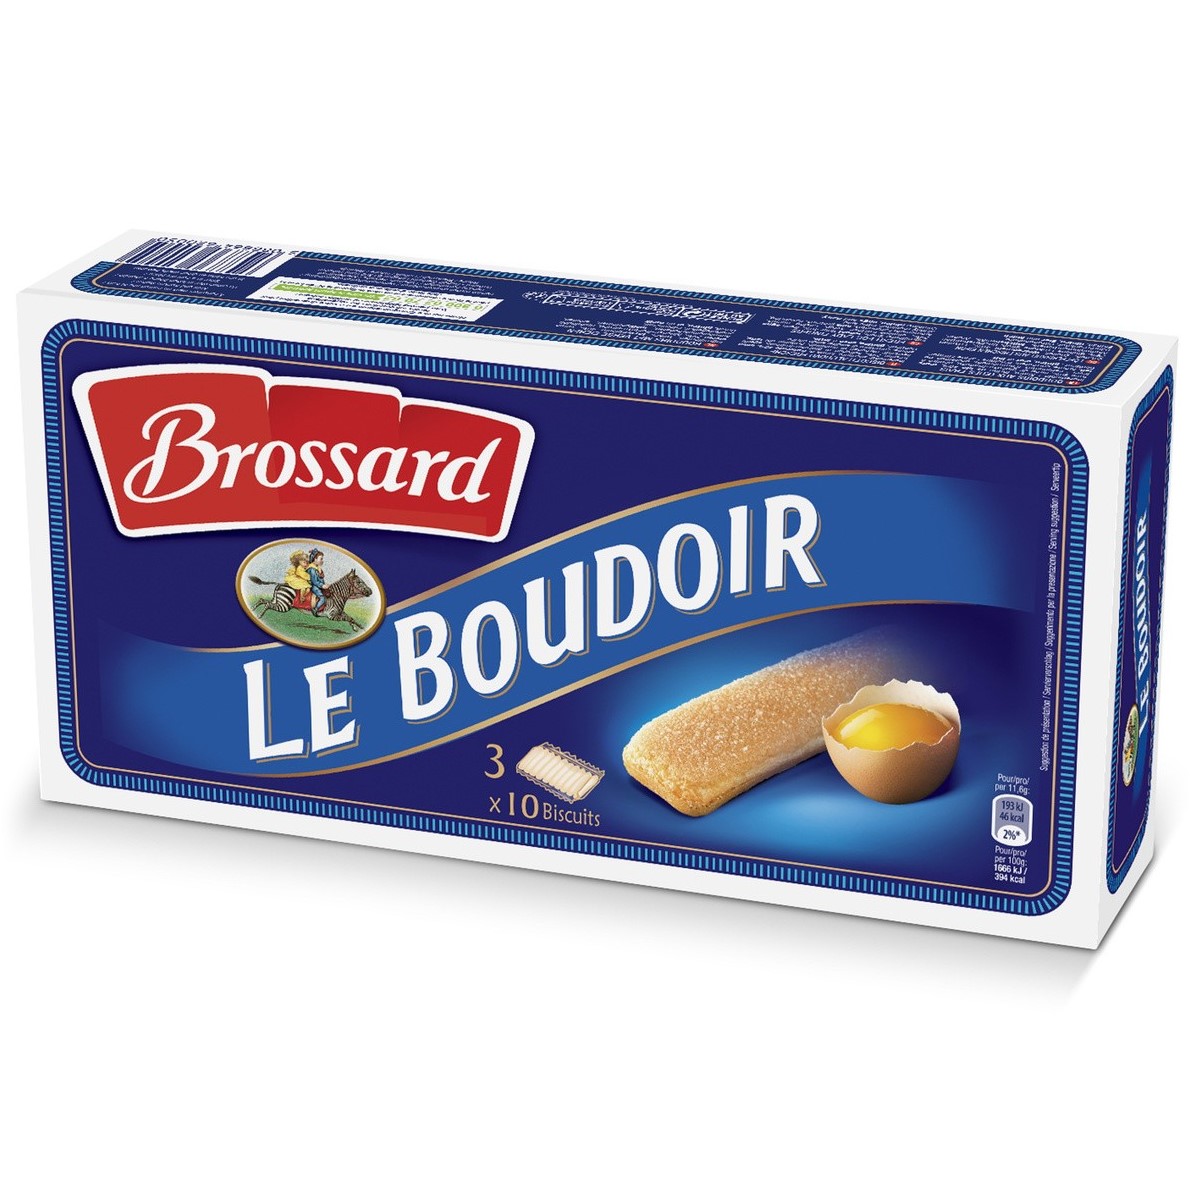 Le Boudoir Original